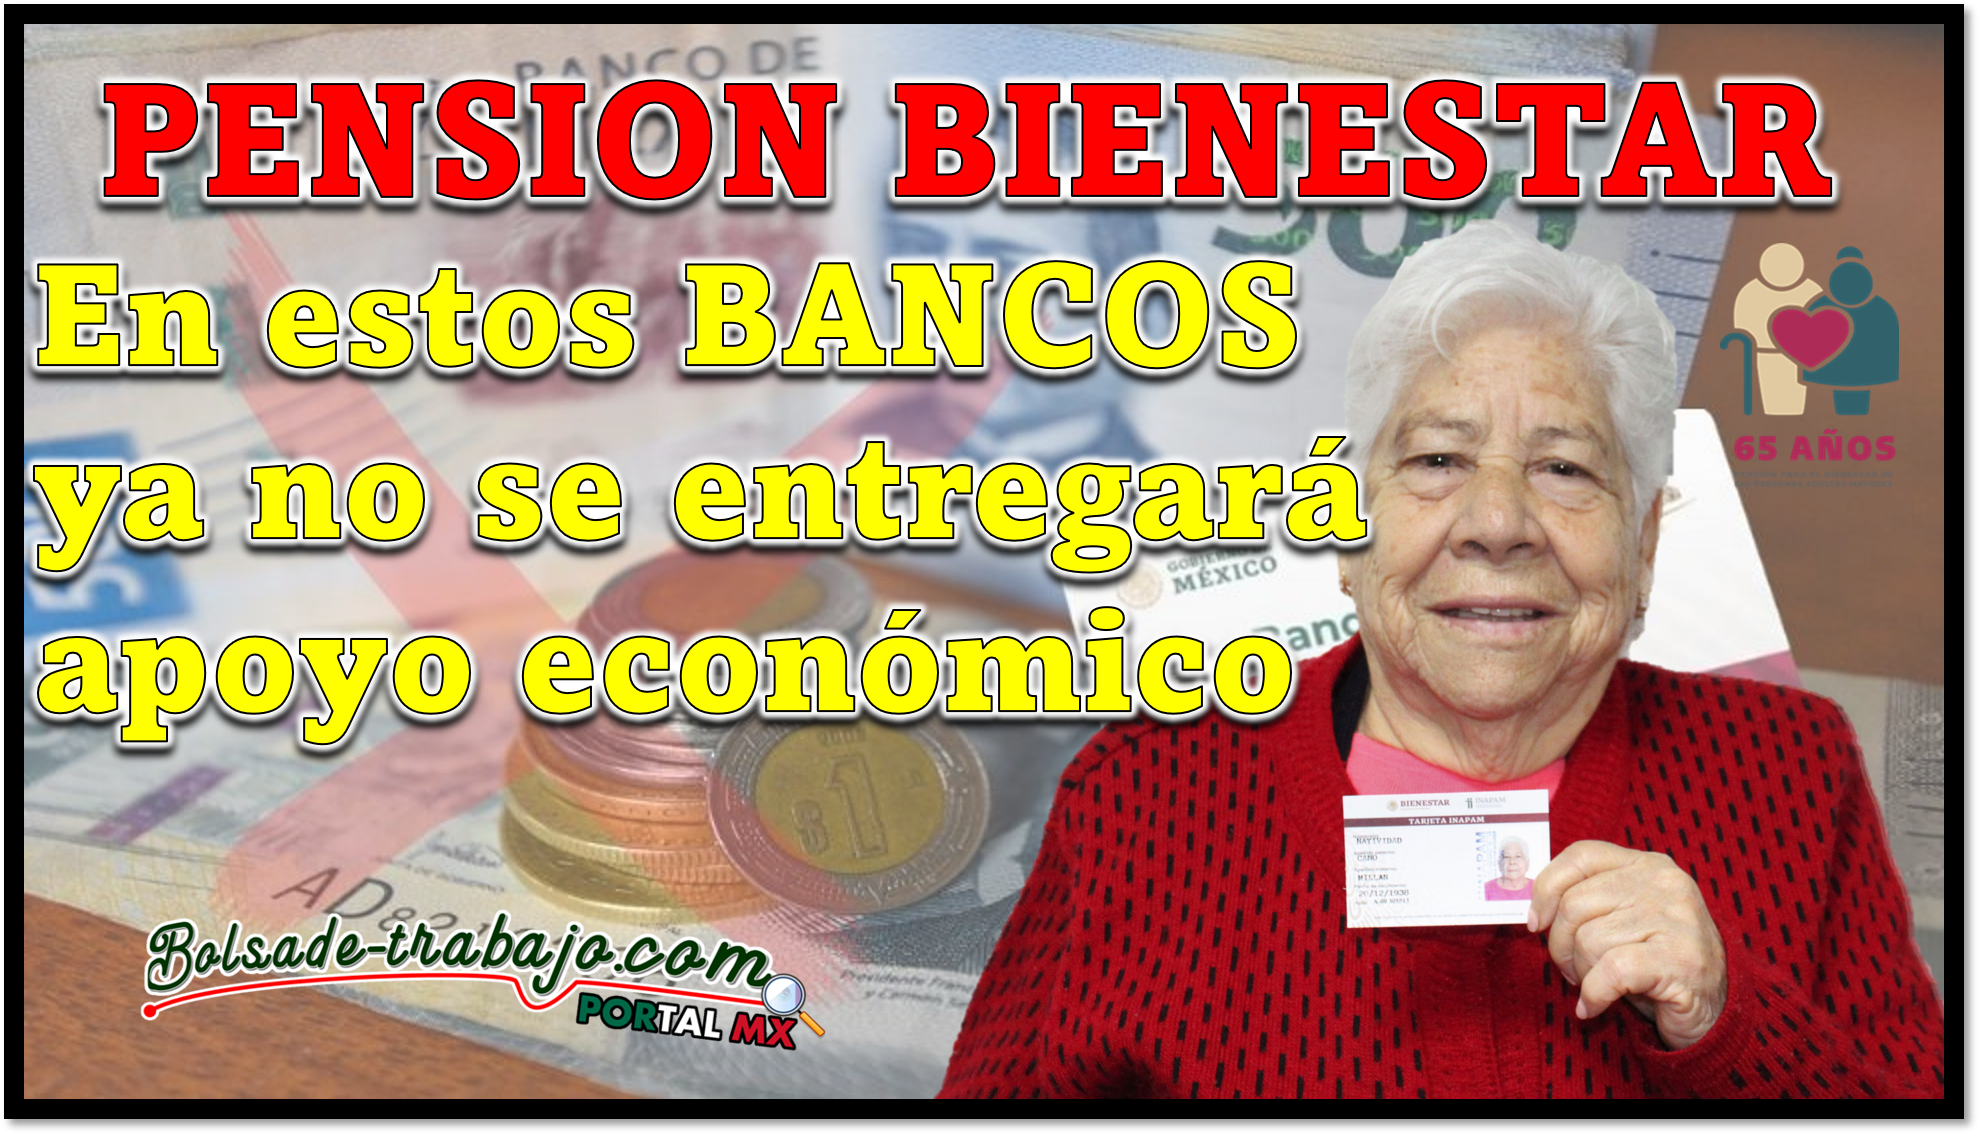 Pension Bienestar: Este apoyo económico dejara de entregarse en los siguientes BANCOS